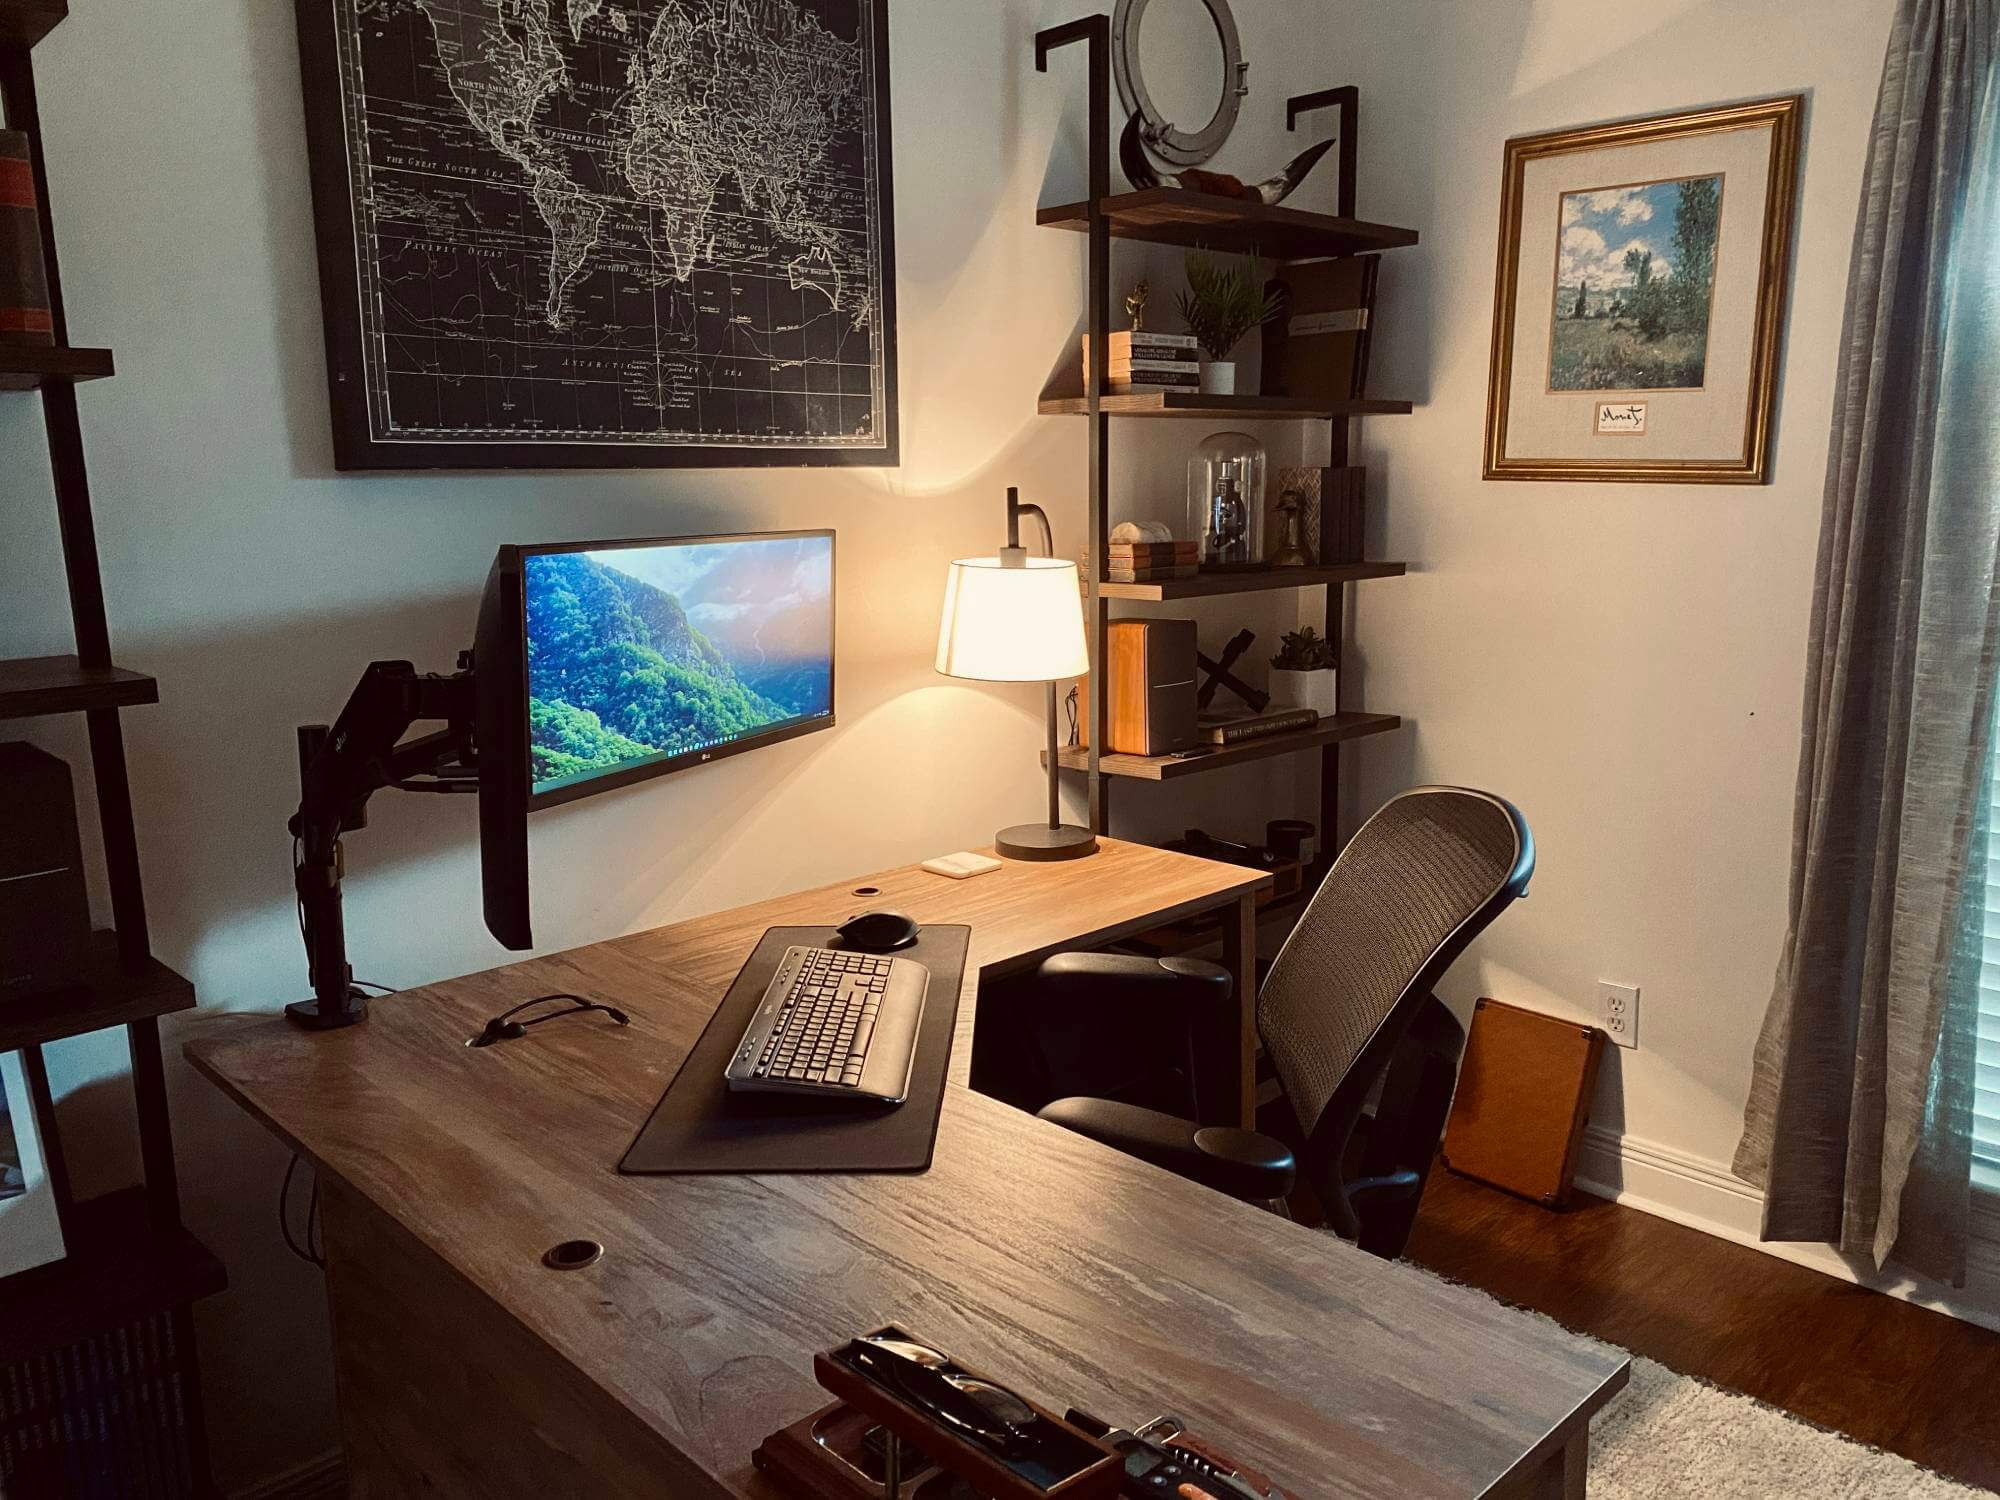 https://www.makerstations.io/content/images/2022/03/ty-faulkner-desk-setup-04-1.jpg